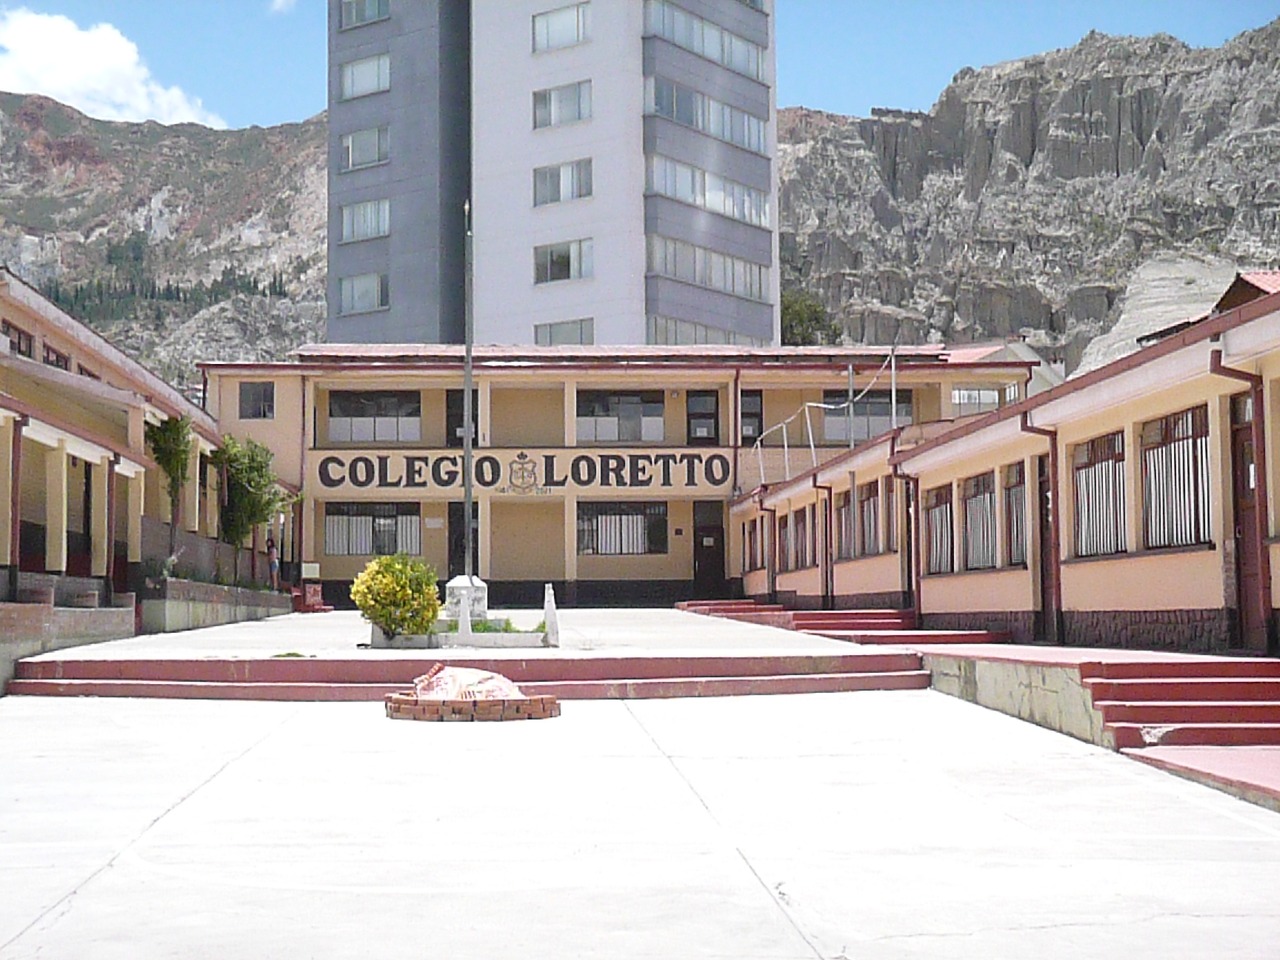 Defensoría del Pueblo coadyuvó en la emisión de Resolución Administrativa que autoriza el funcionamiento legal del Colegio Loreto